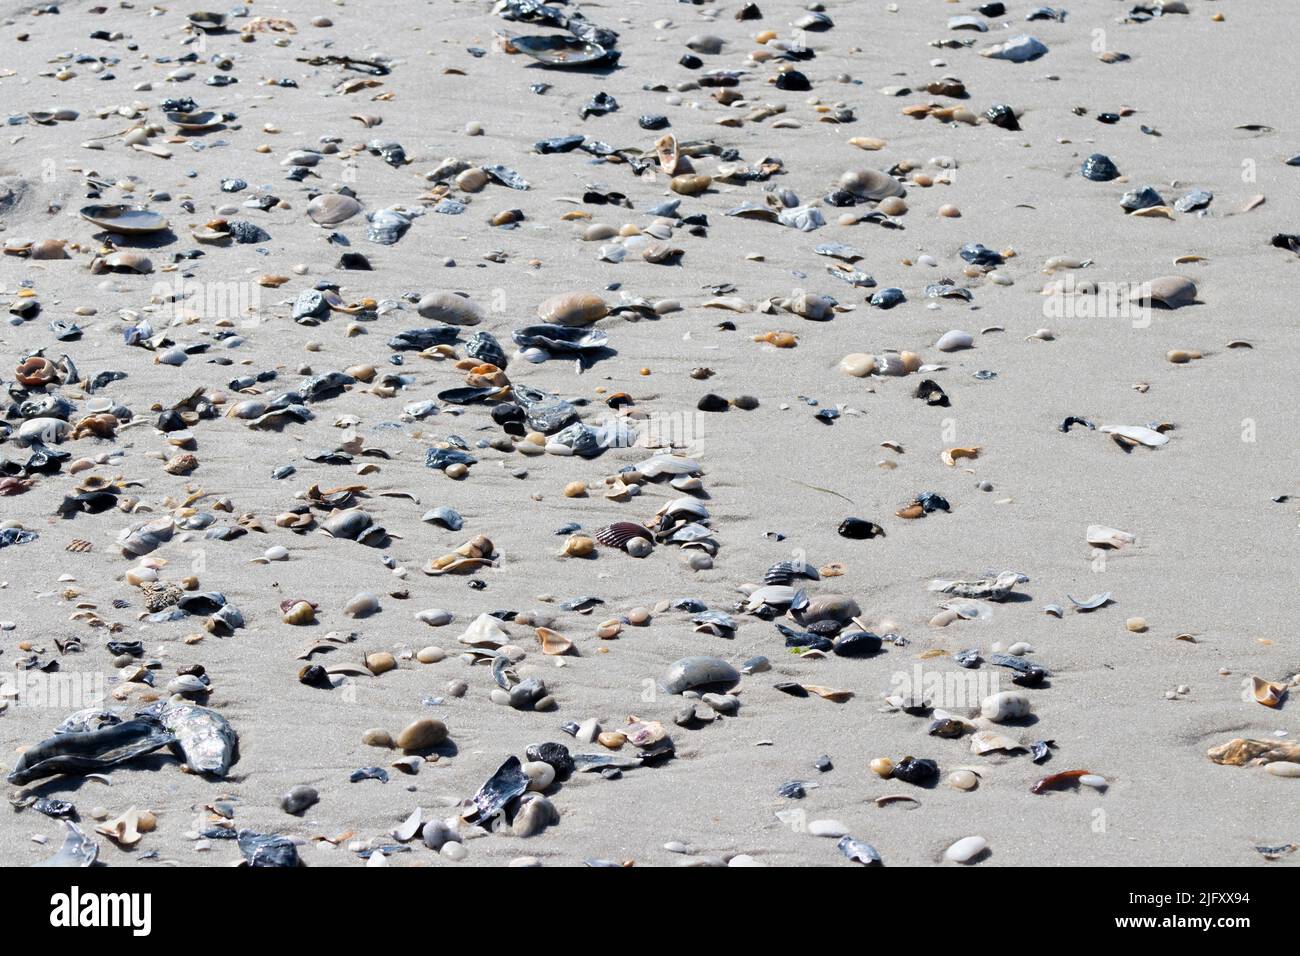 Las conchas marinas se dispersan a lo largo de la orilla del Cabo May New Jersey después de que la marea del océano se apagara en una mañana de verano Foto de stock